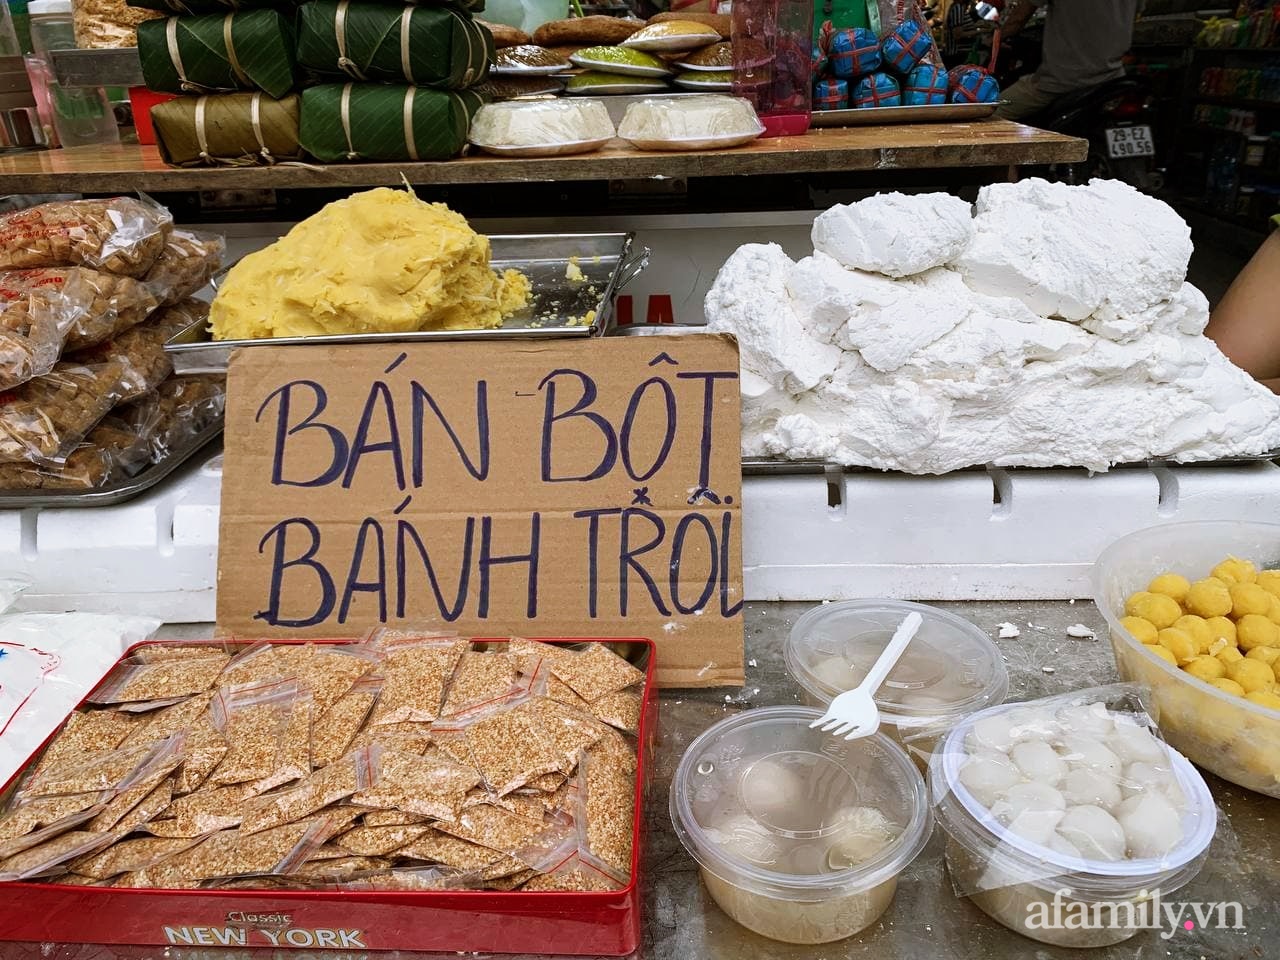 Tết Hàn thực: Ngay từ sớm dân Hà Nội đã nhộn nhịp xếp hàng đi chợ mua bánh trôi bánh chay, sắm đồ cúng lễ - Ảnh 5.